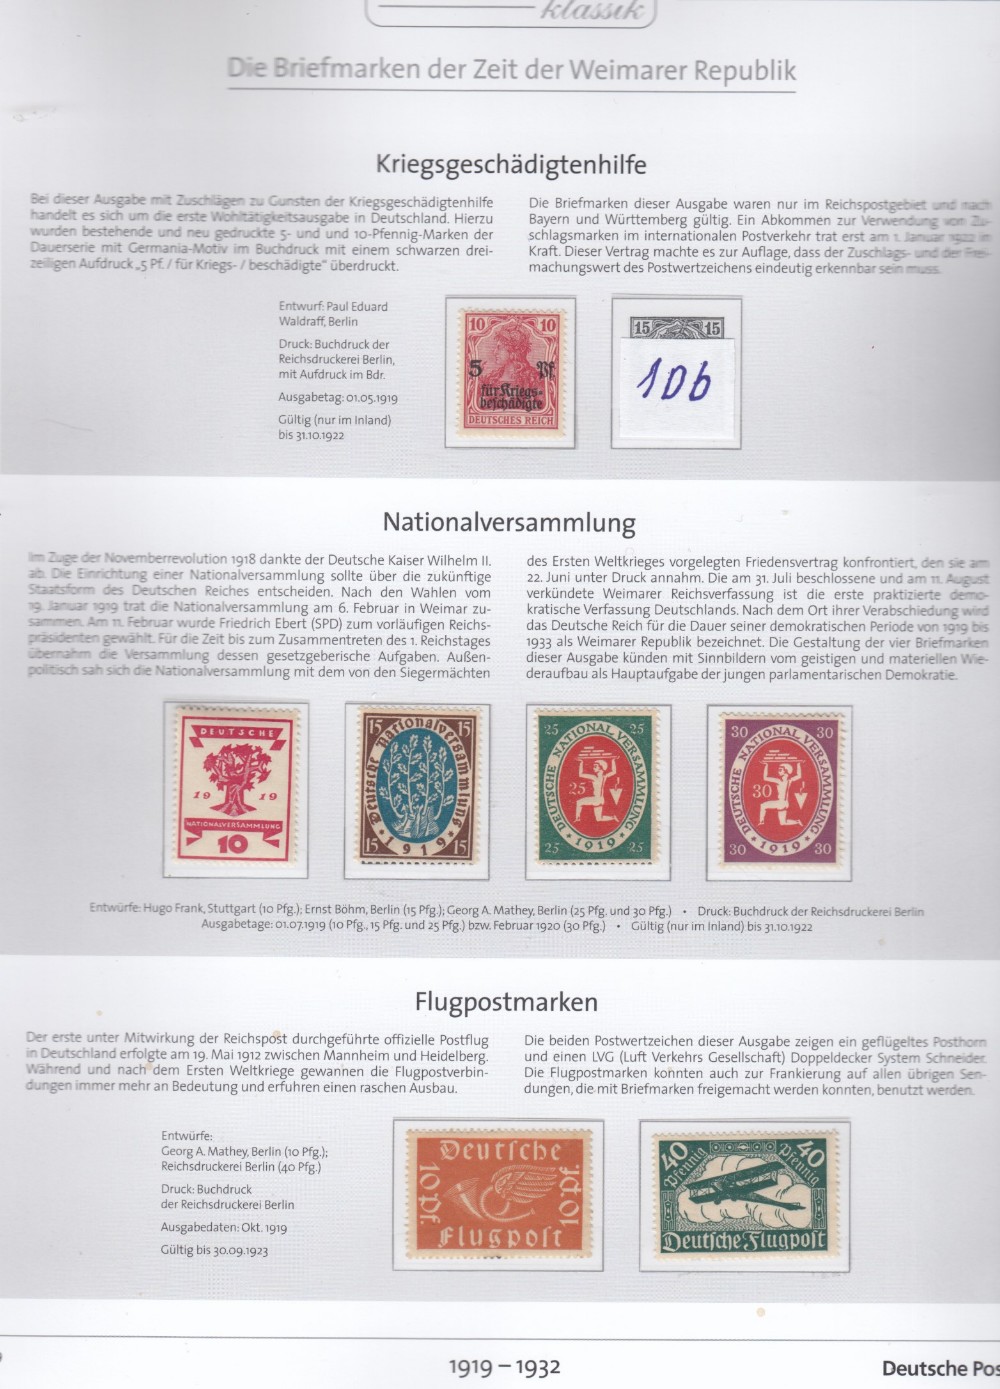 DEUTSCHES REICH WEIMARER REPUBLIK 1919-1932 ALBUM - Image 4 of 5